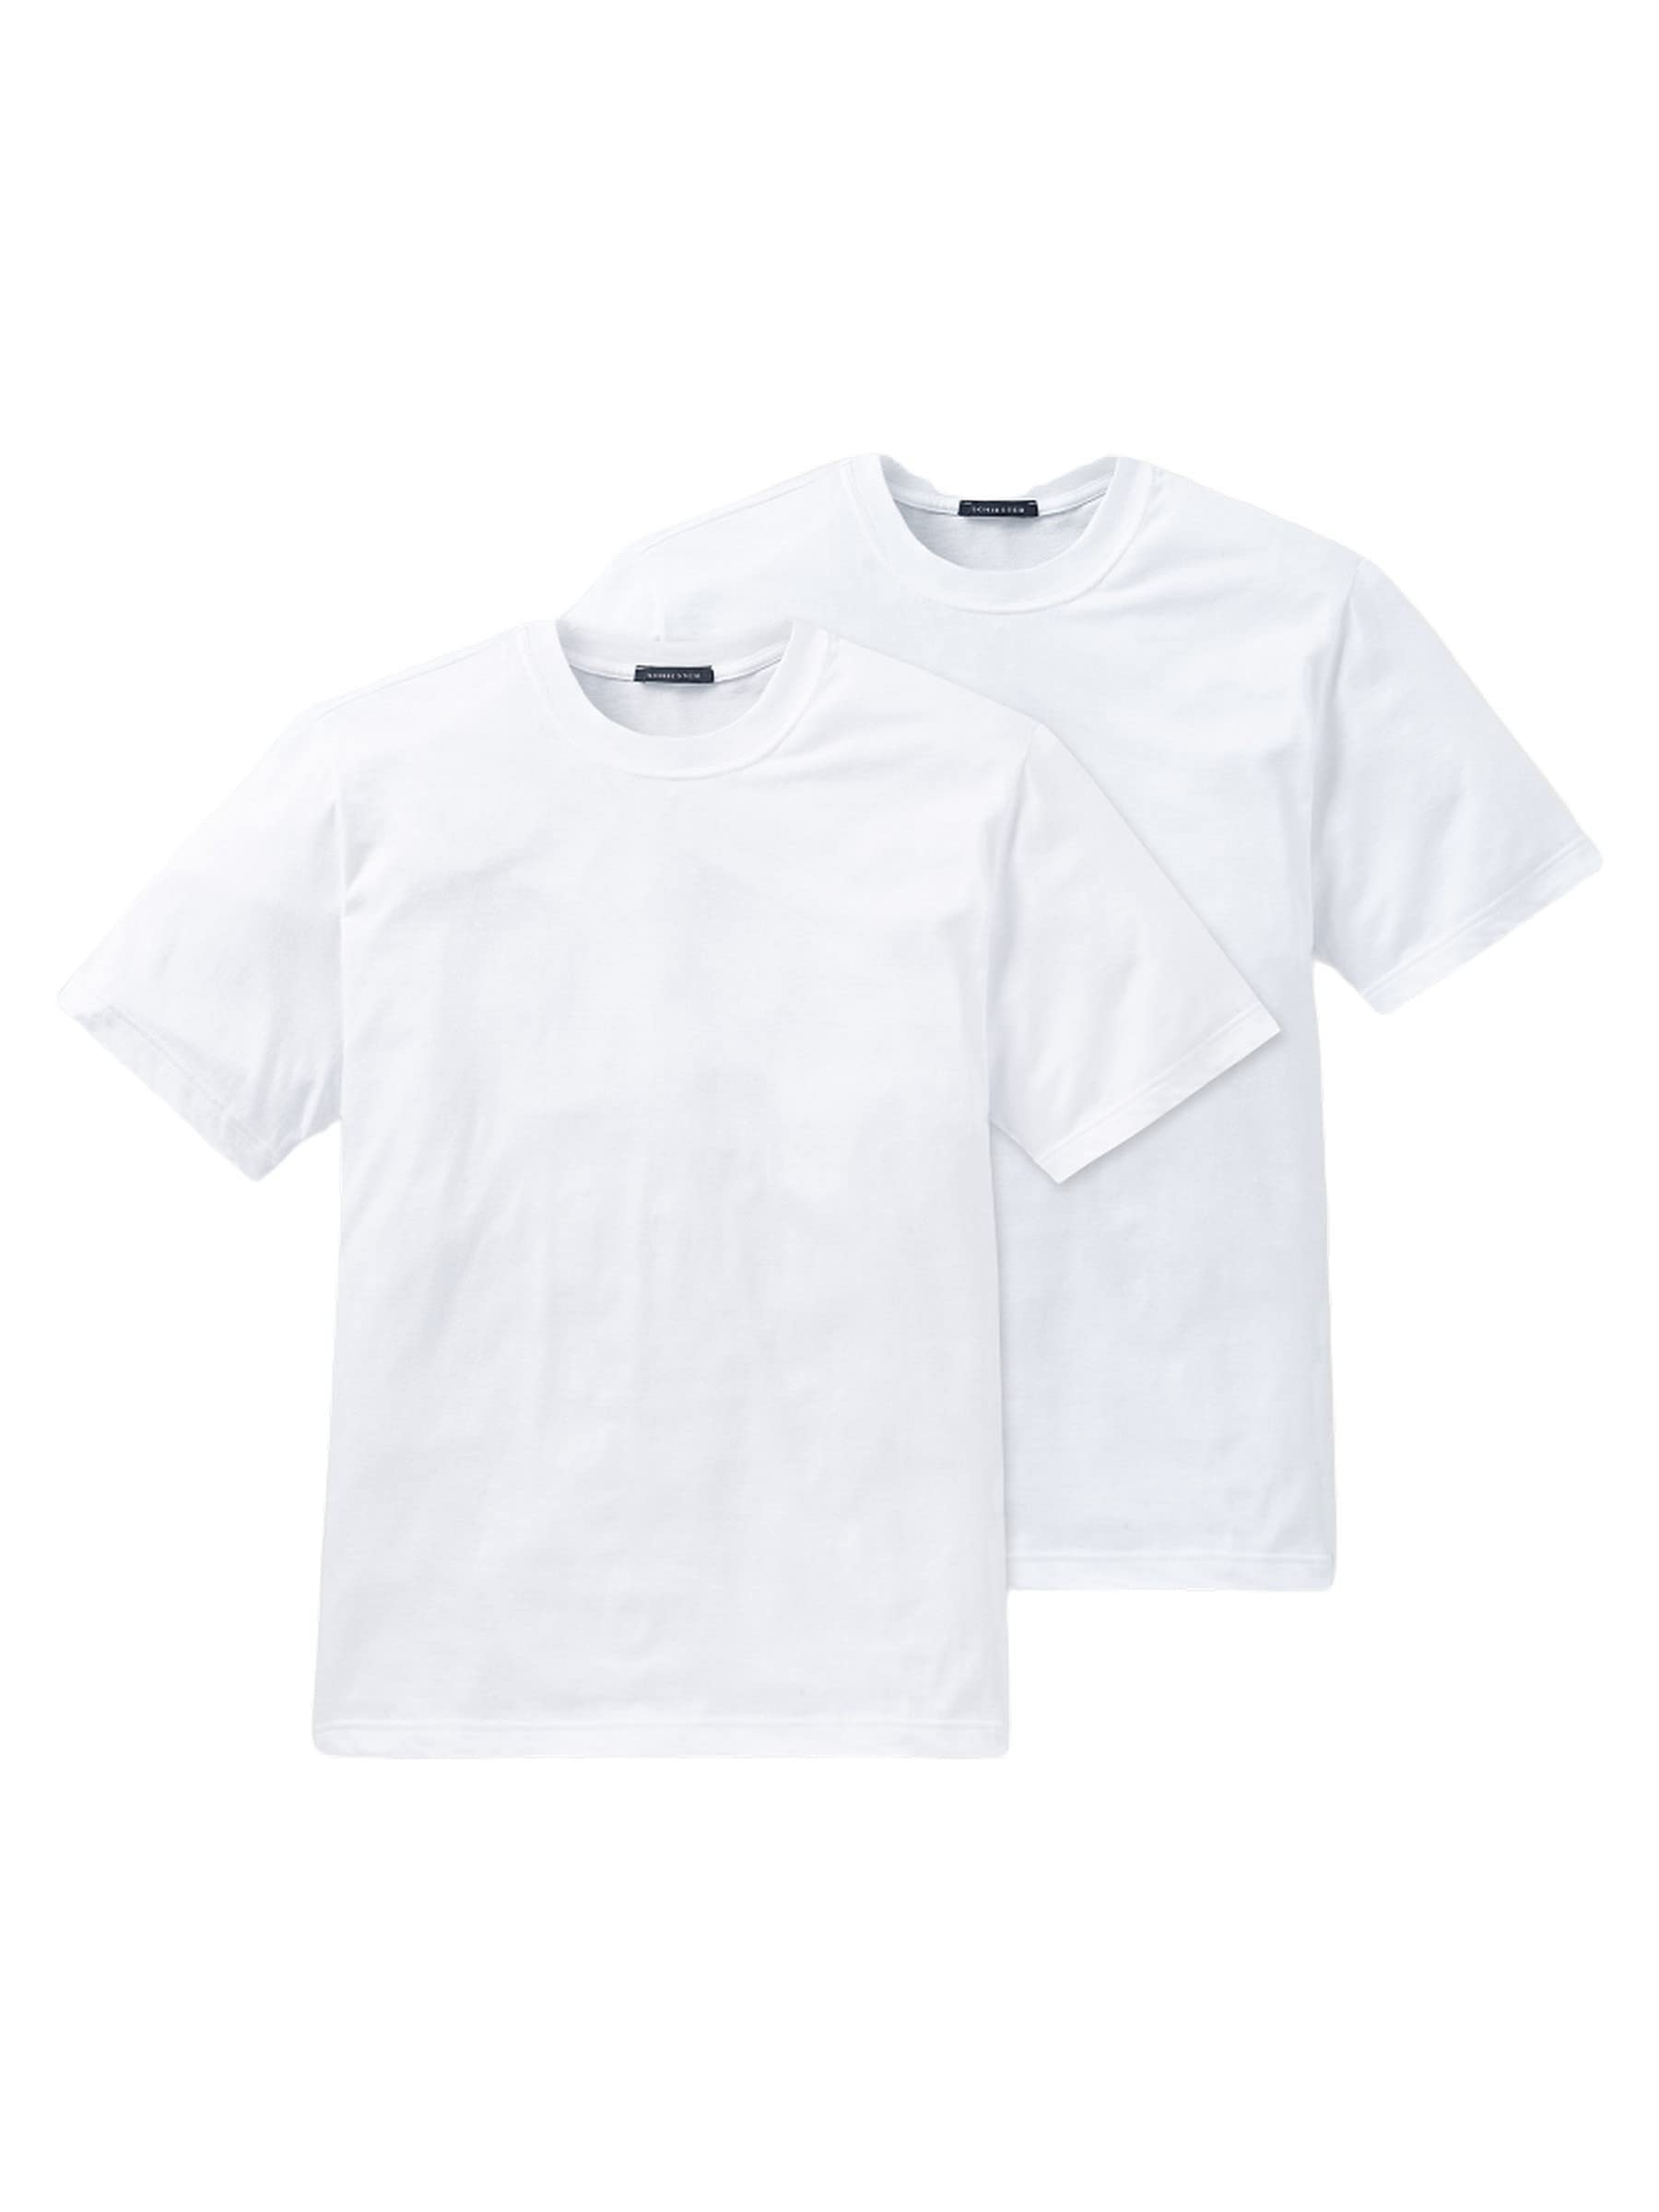 Schiesser Herren Unterhemd 2 er Pack 208150-100, Gr. 7 (XL), Weiß (100-weiss)